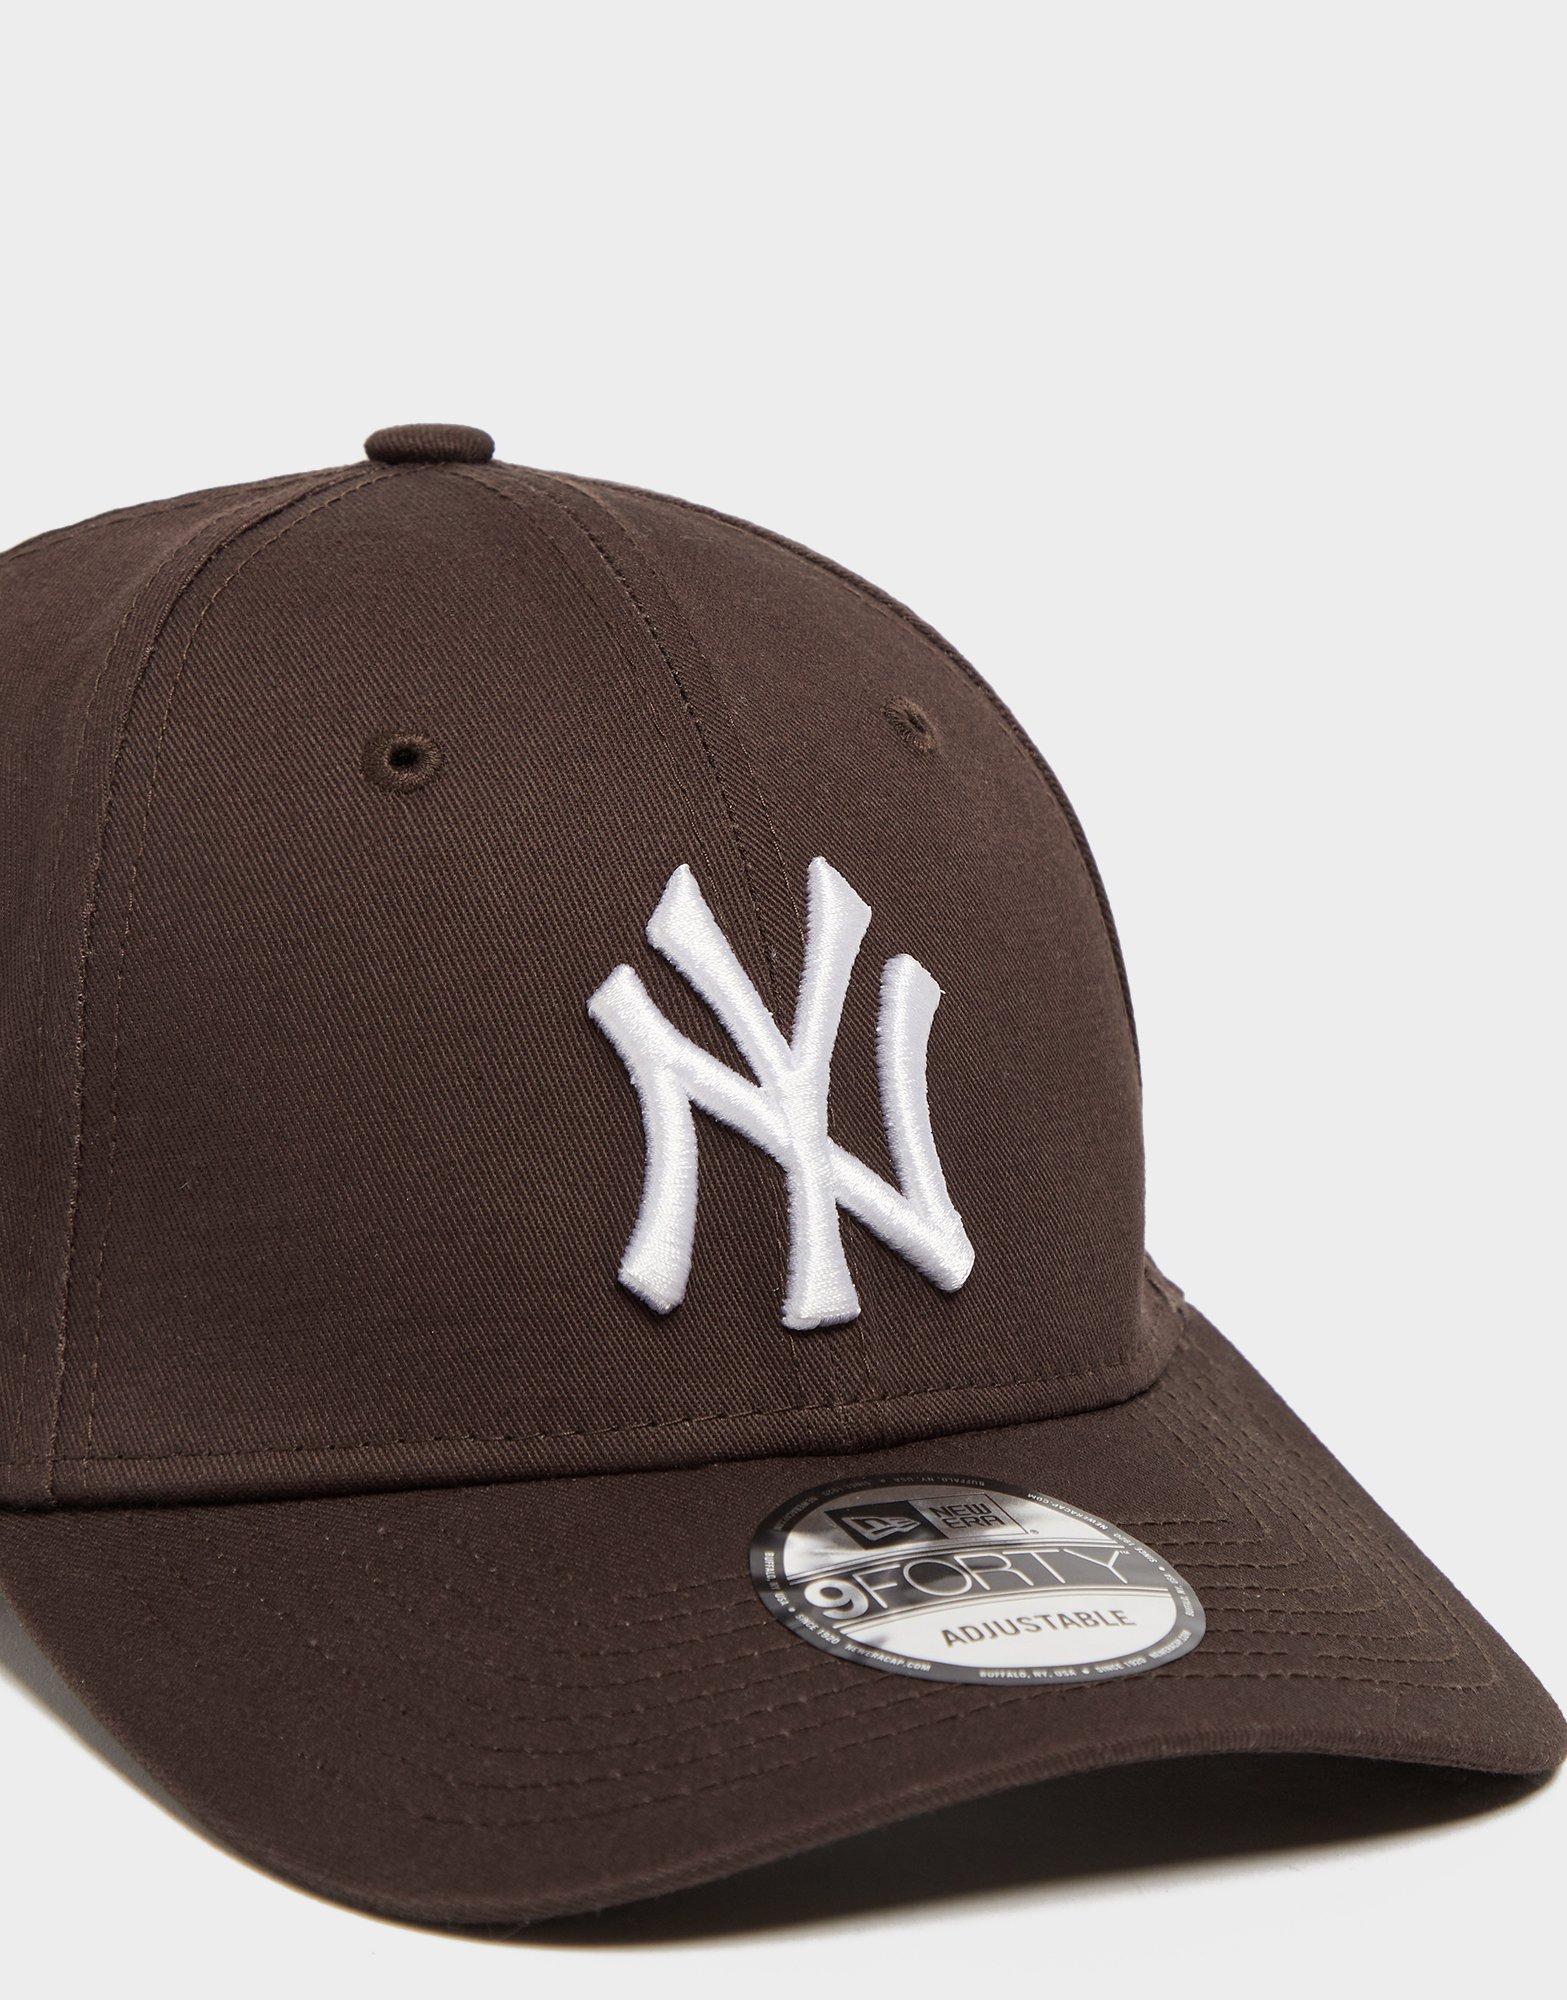 New York Yankees Personalized Baseball Jersey Shirt 137